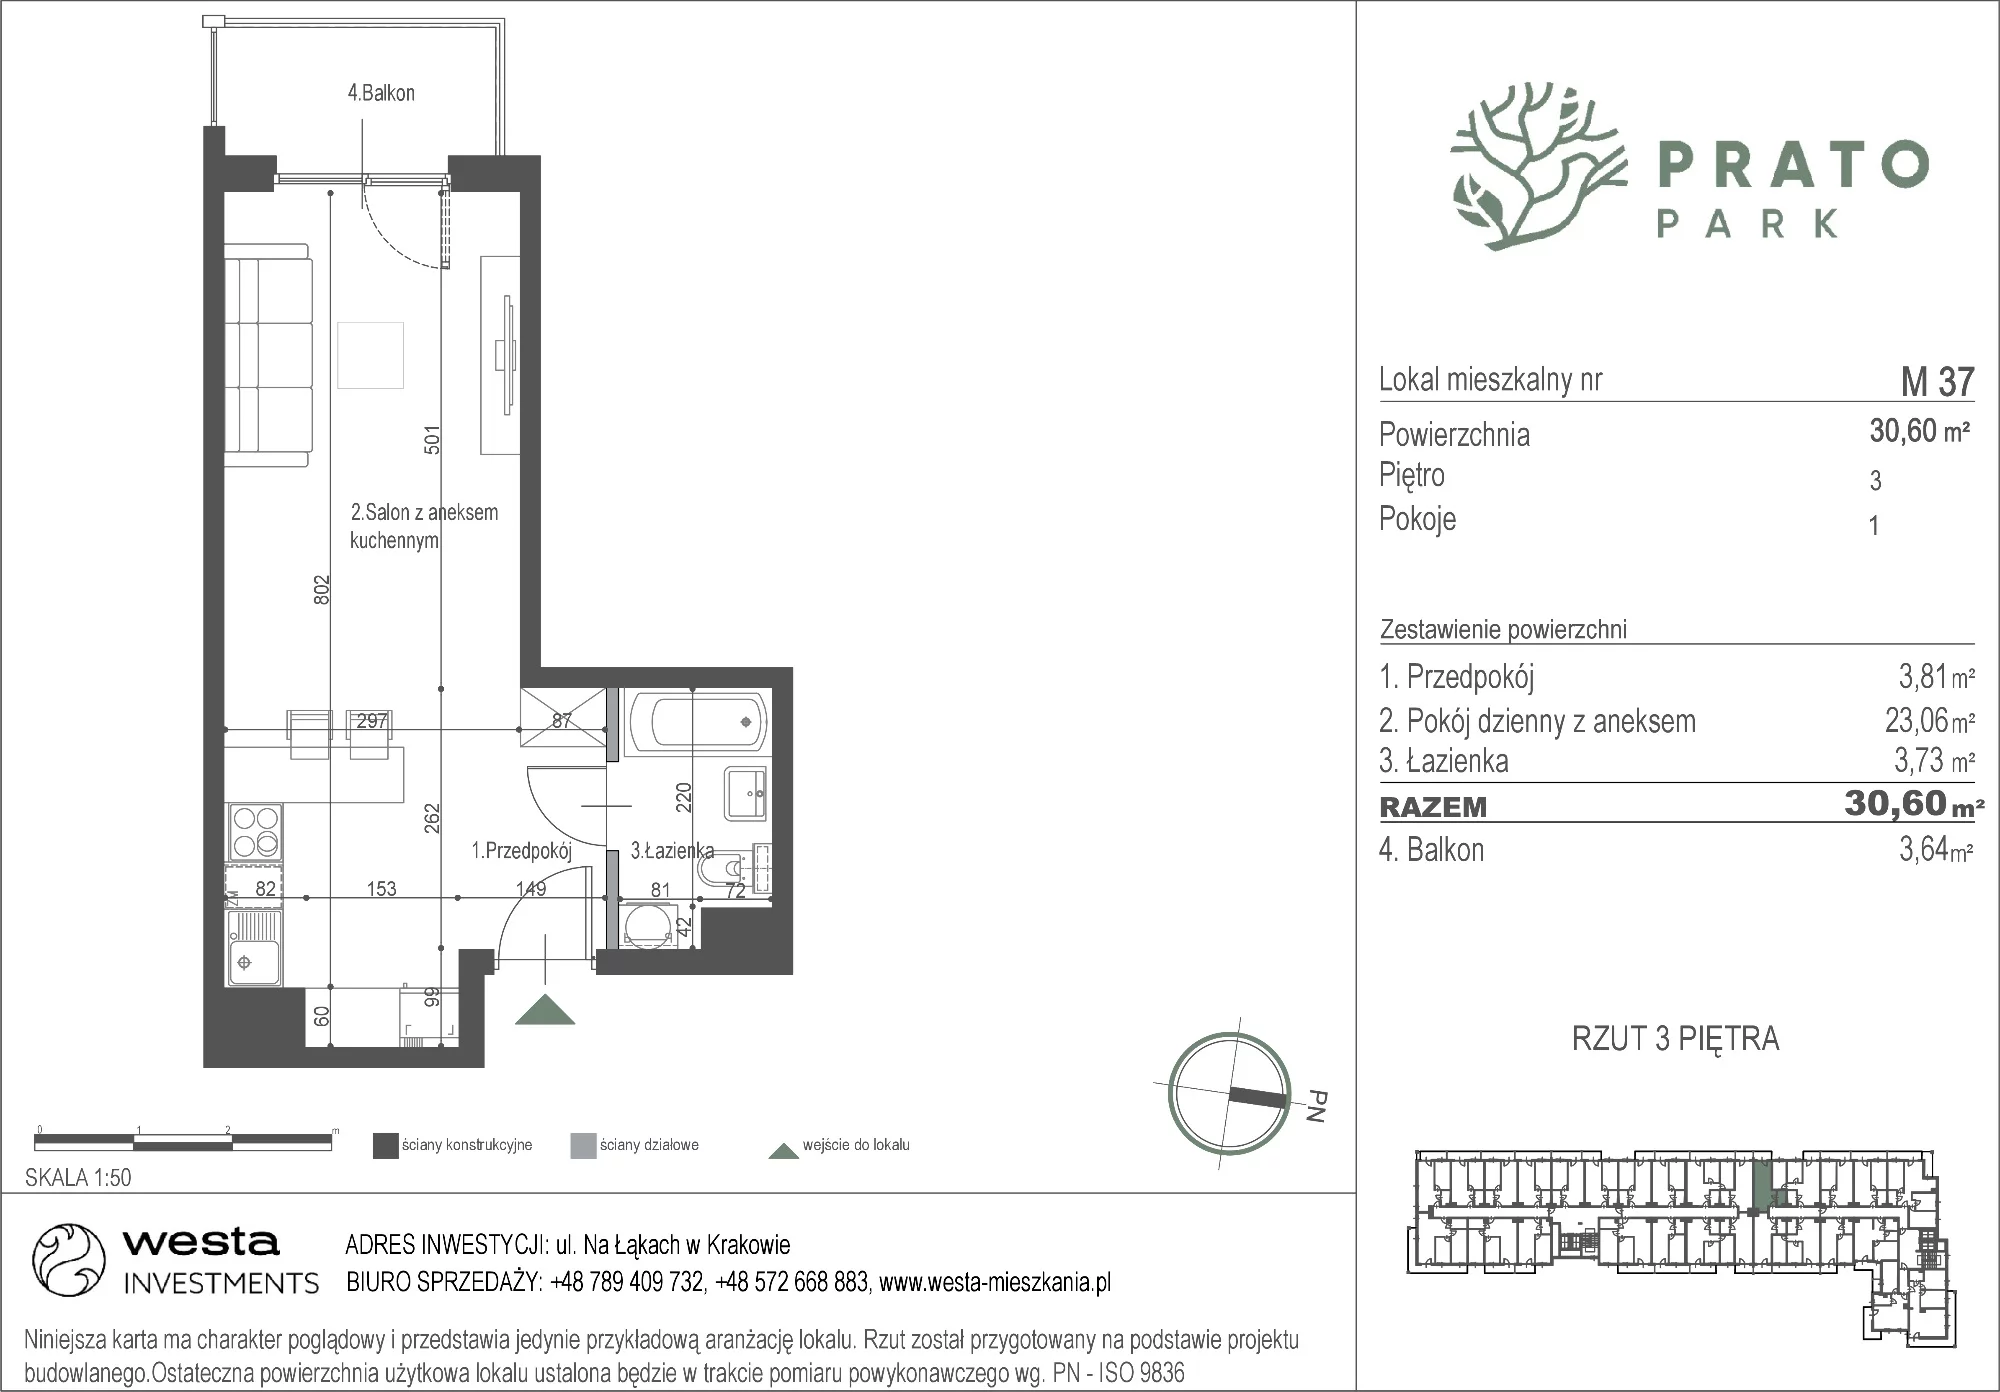 Mieszkanie 30,60 m², piętro 3, oferta nr M37, Prato Park, Kraków, Czyżyny, ul. Na Łąkach